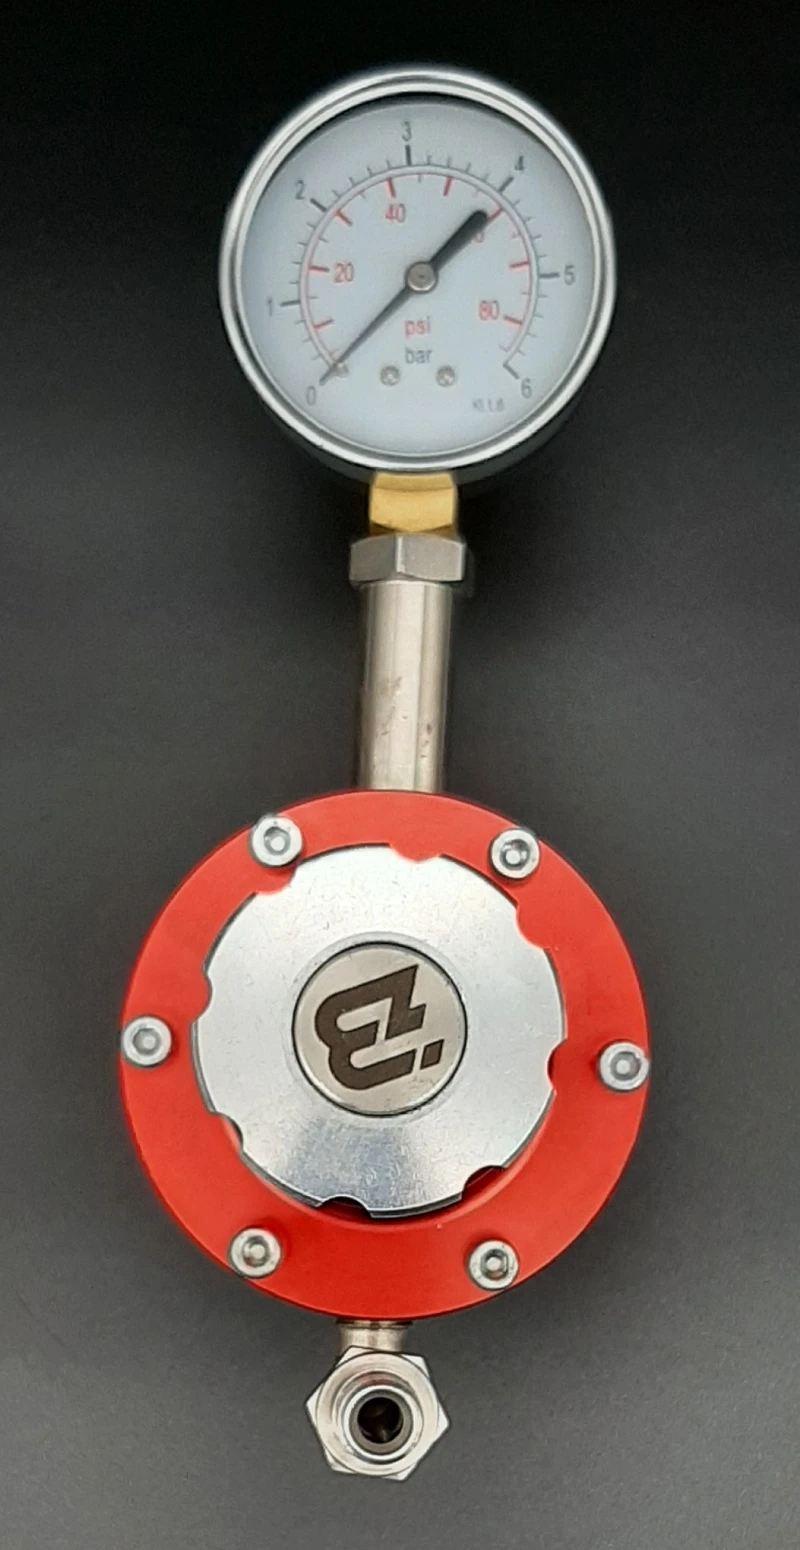 Material pressure regulator